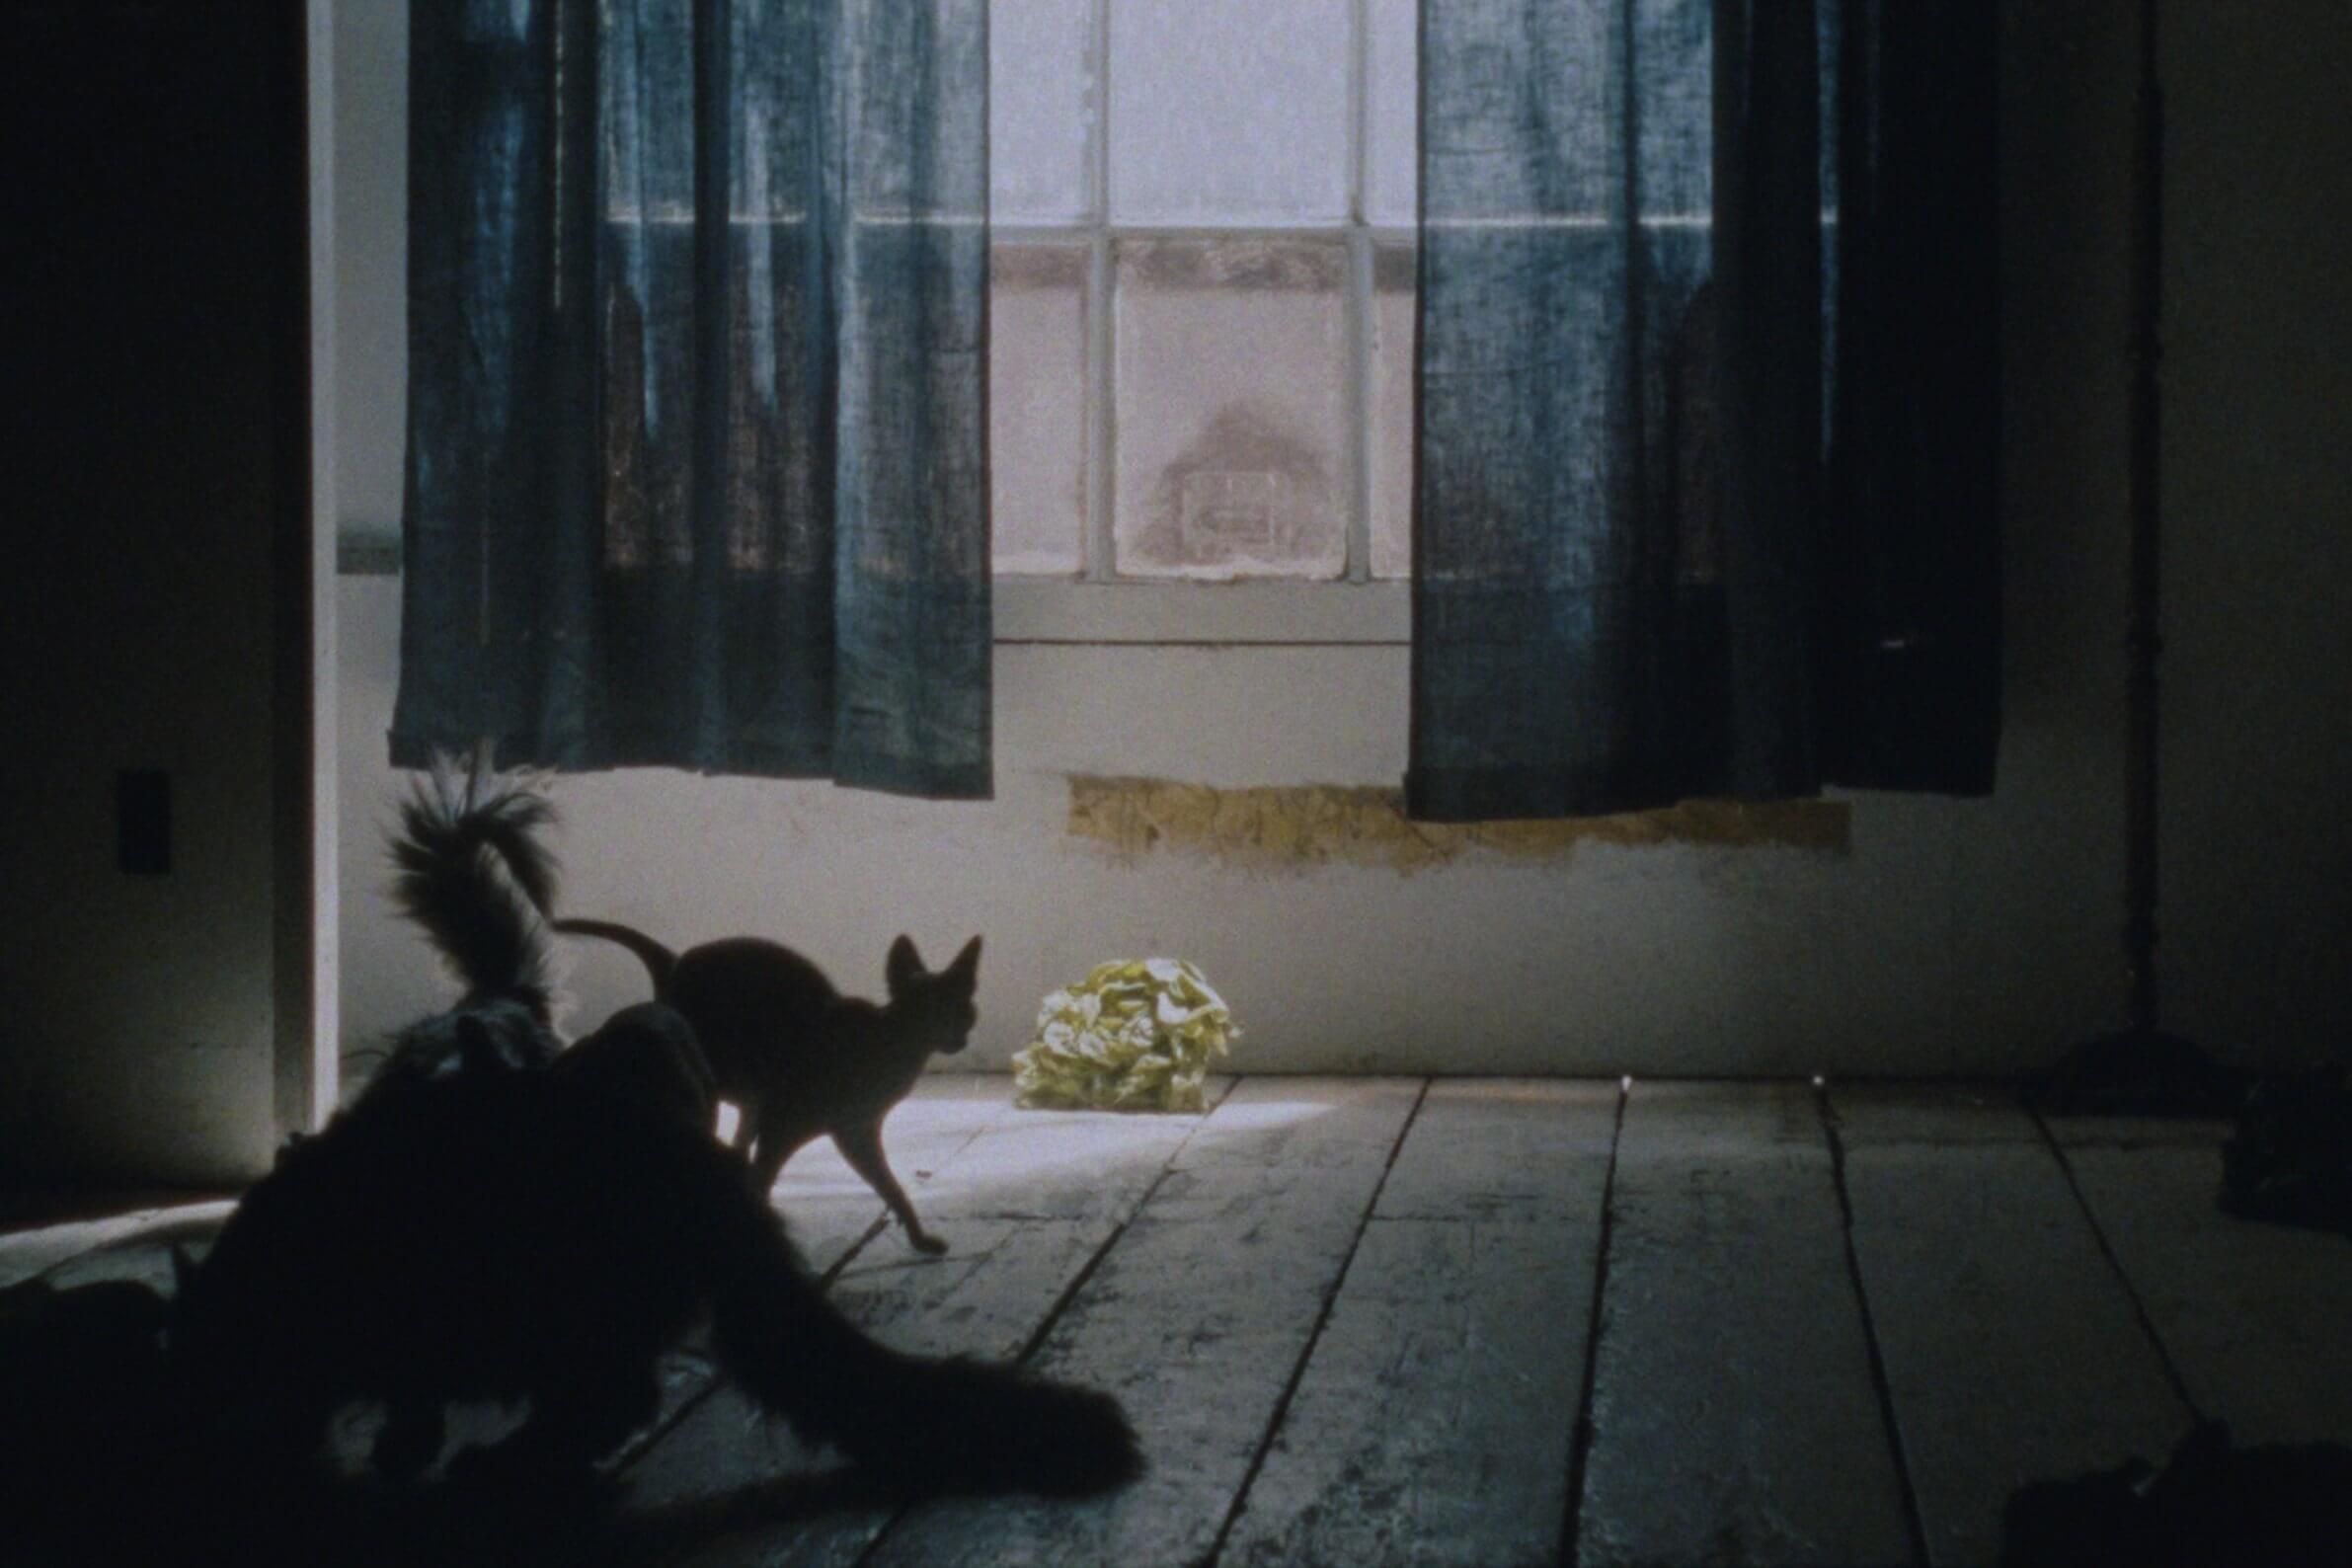 Des chats et un chou dans le film Irlande cahier bleu